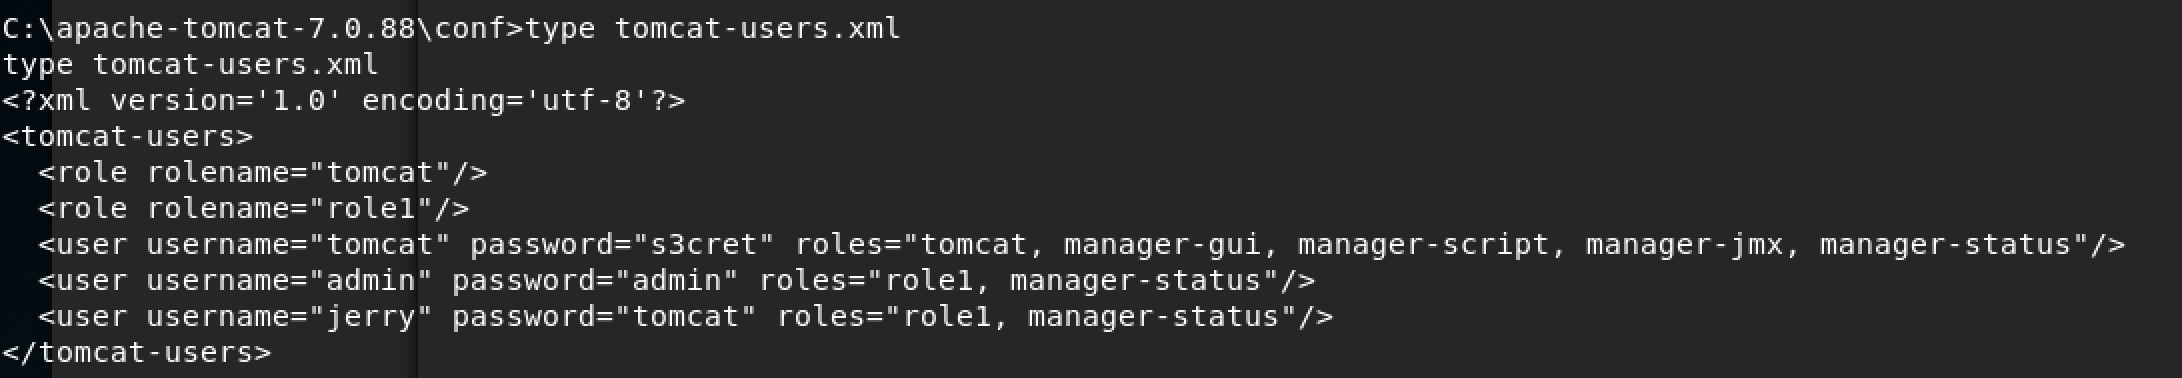 HackTheBox Jerry - Tomcat Users Credentials